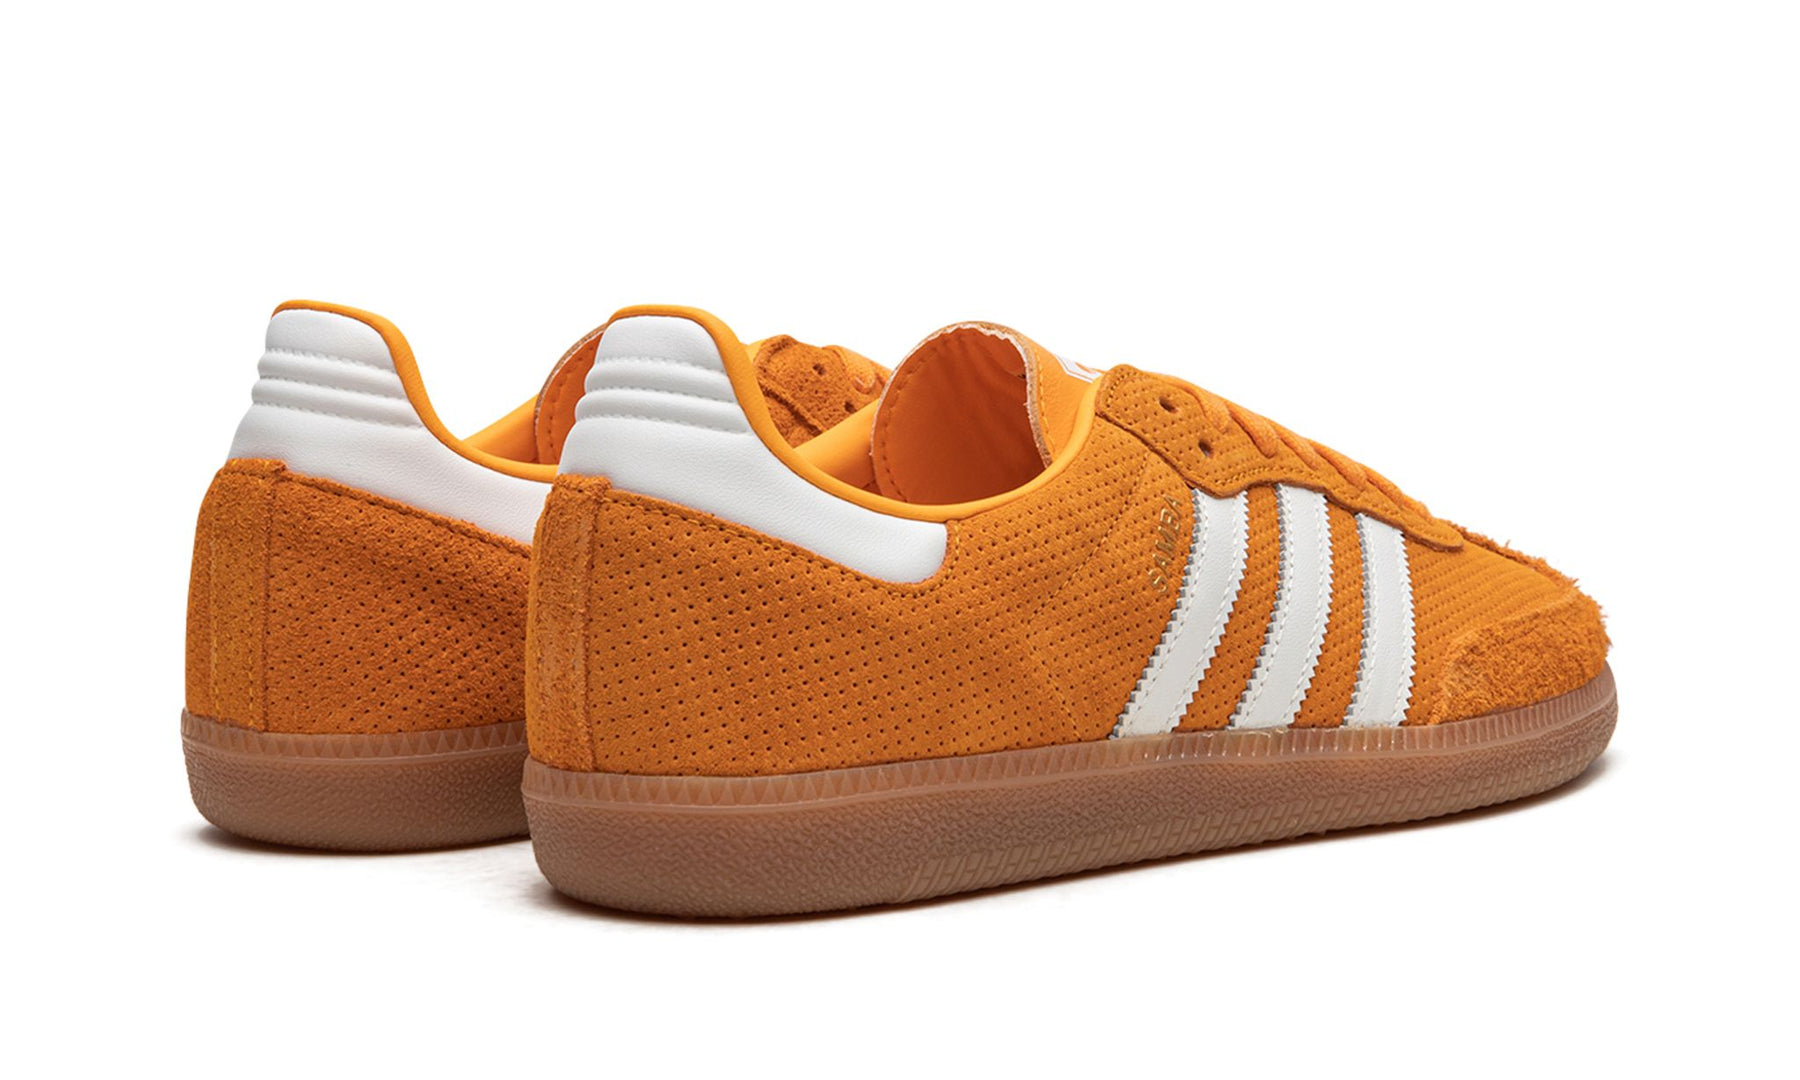 Adidas Samba "Orange Rush"